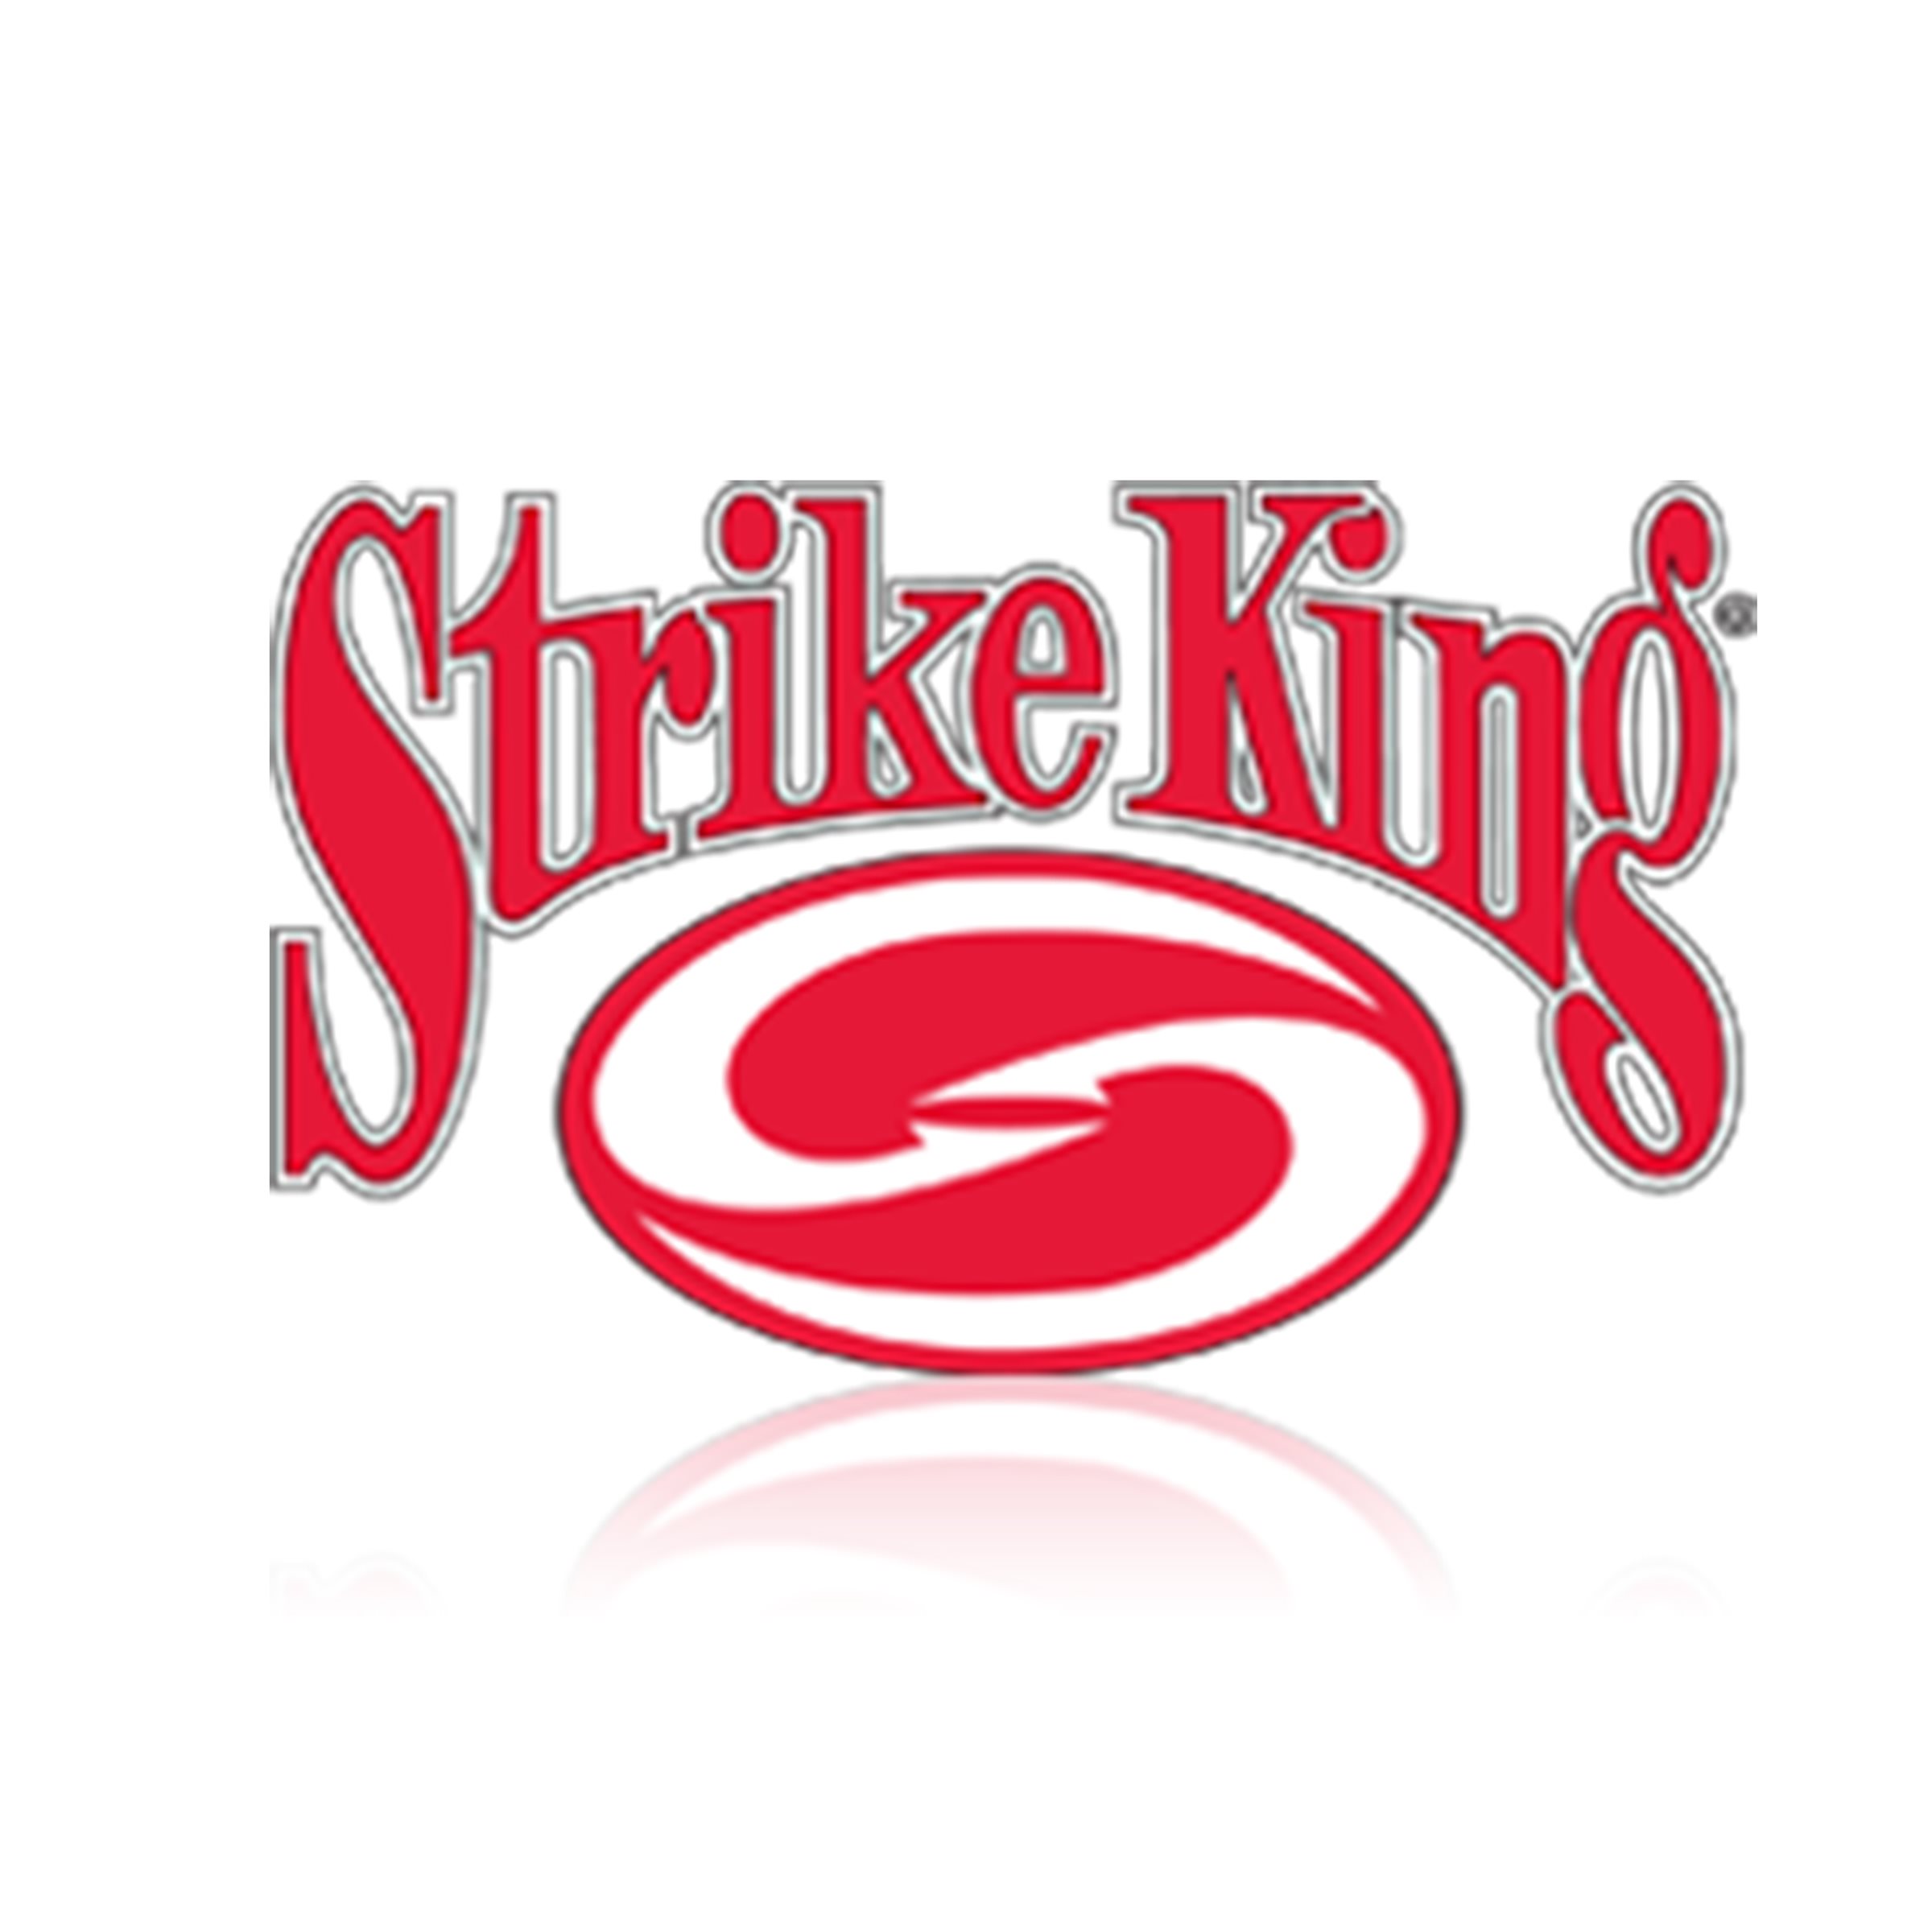 A_Strike-king